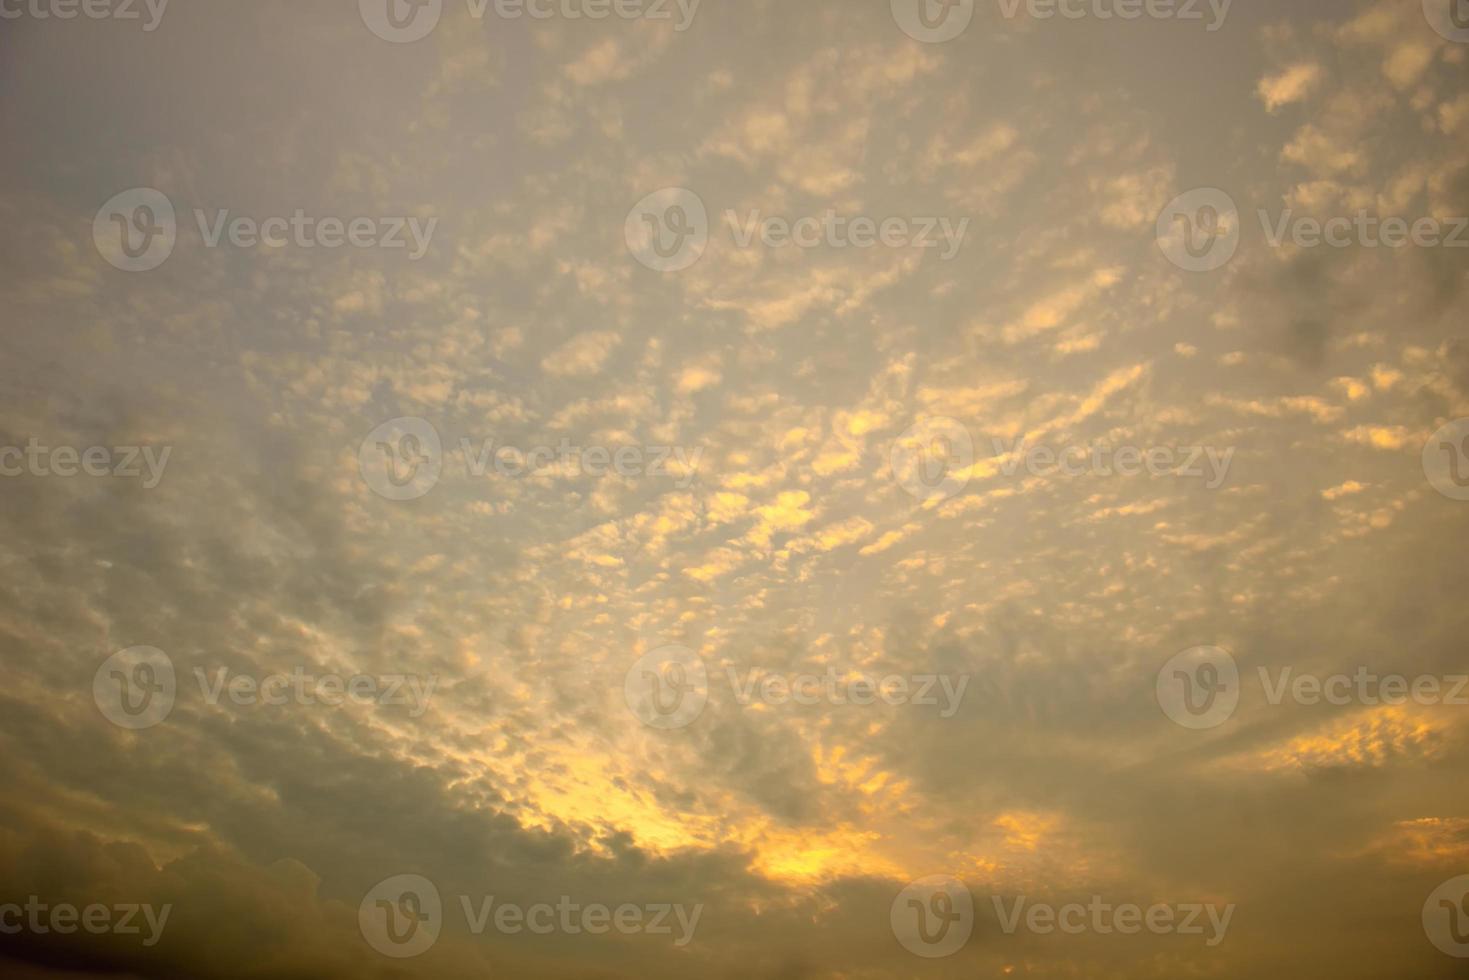 himlen med moln vacker solnedgång bakgrund foto